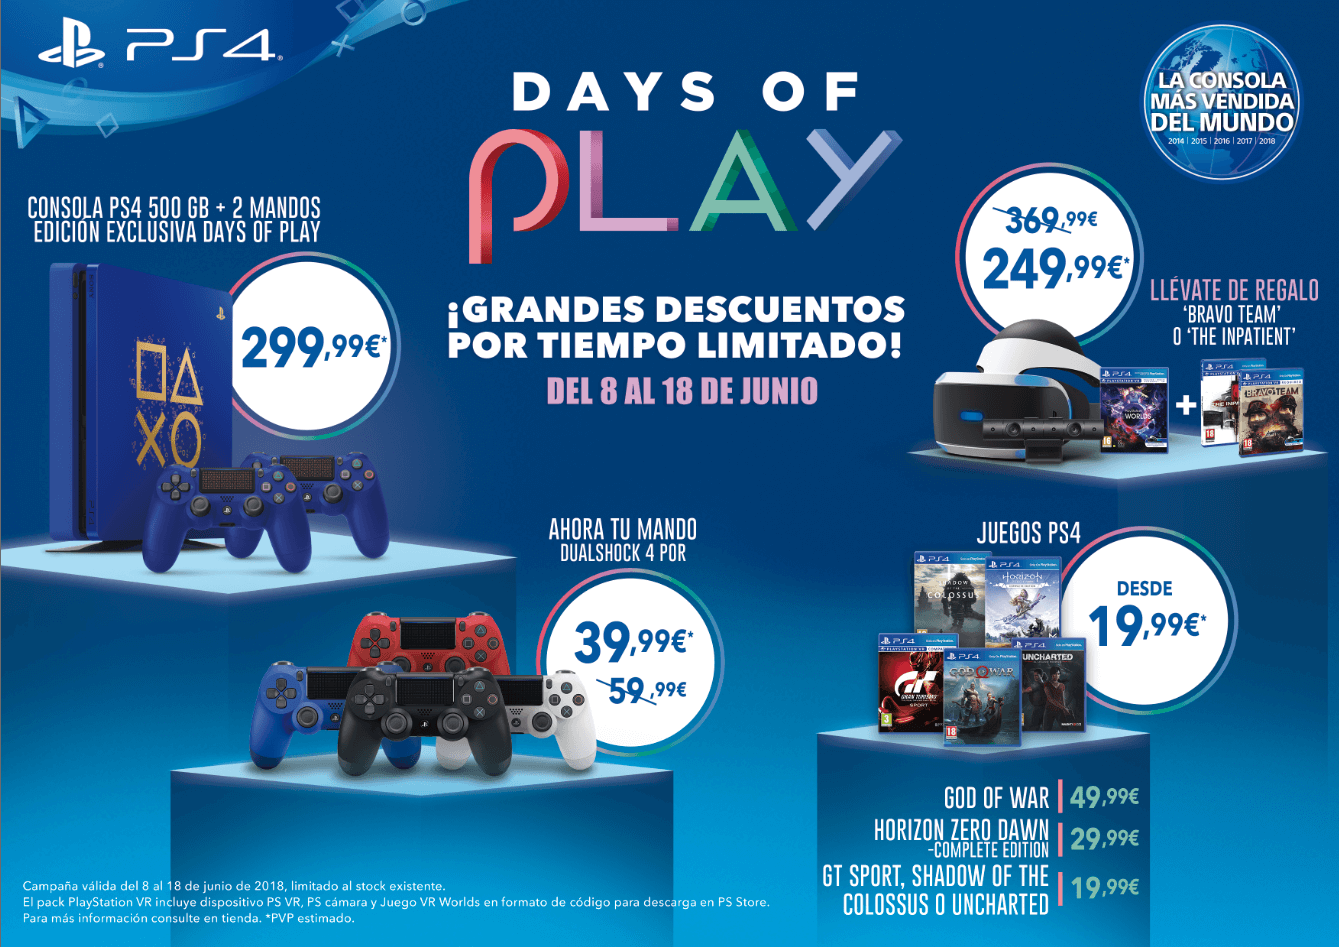 Descubre los grandes descuentos de las rebajas ‘Days of Play’ y la exclusiva PlayStation 4 edición limitada